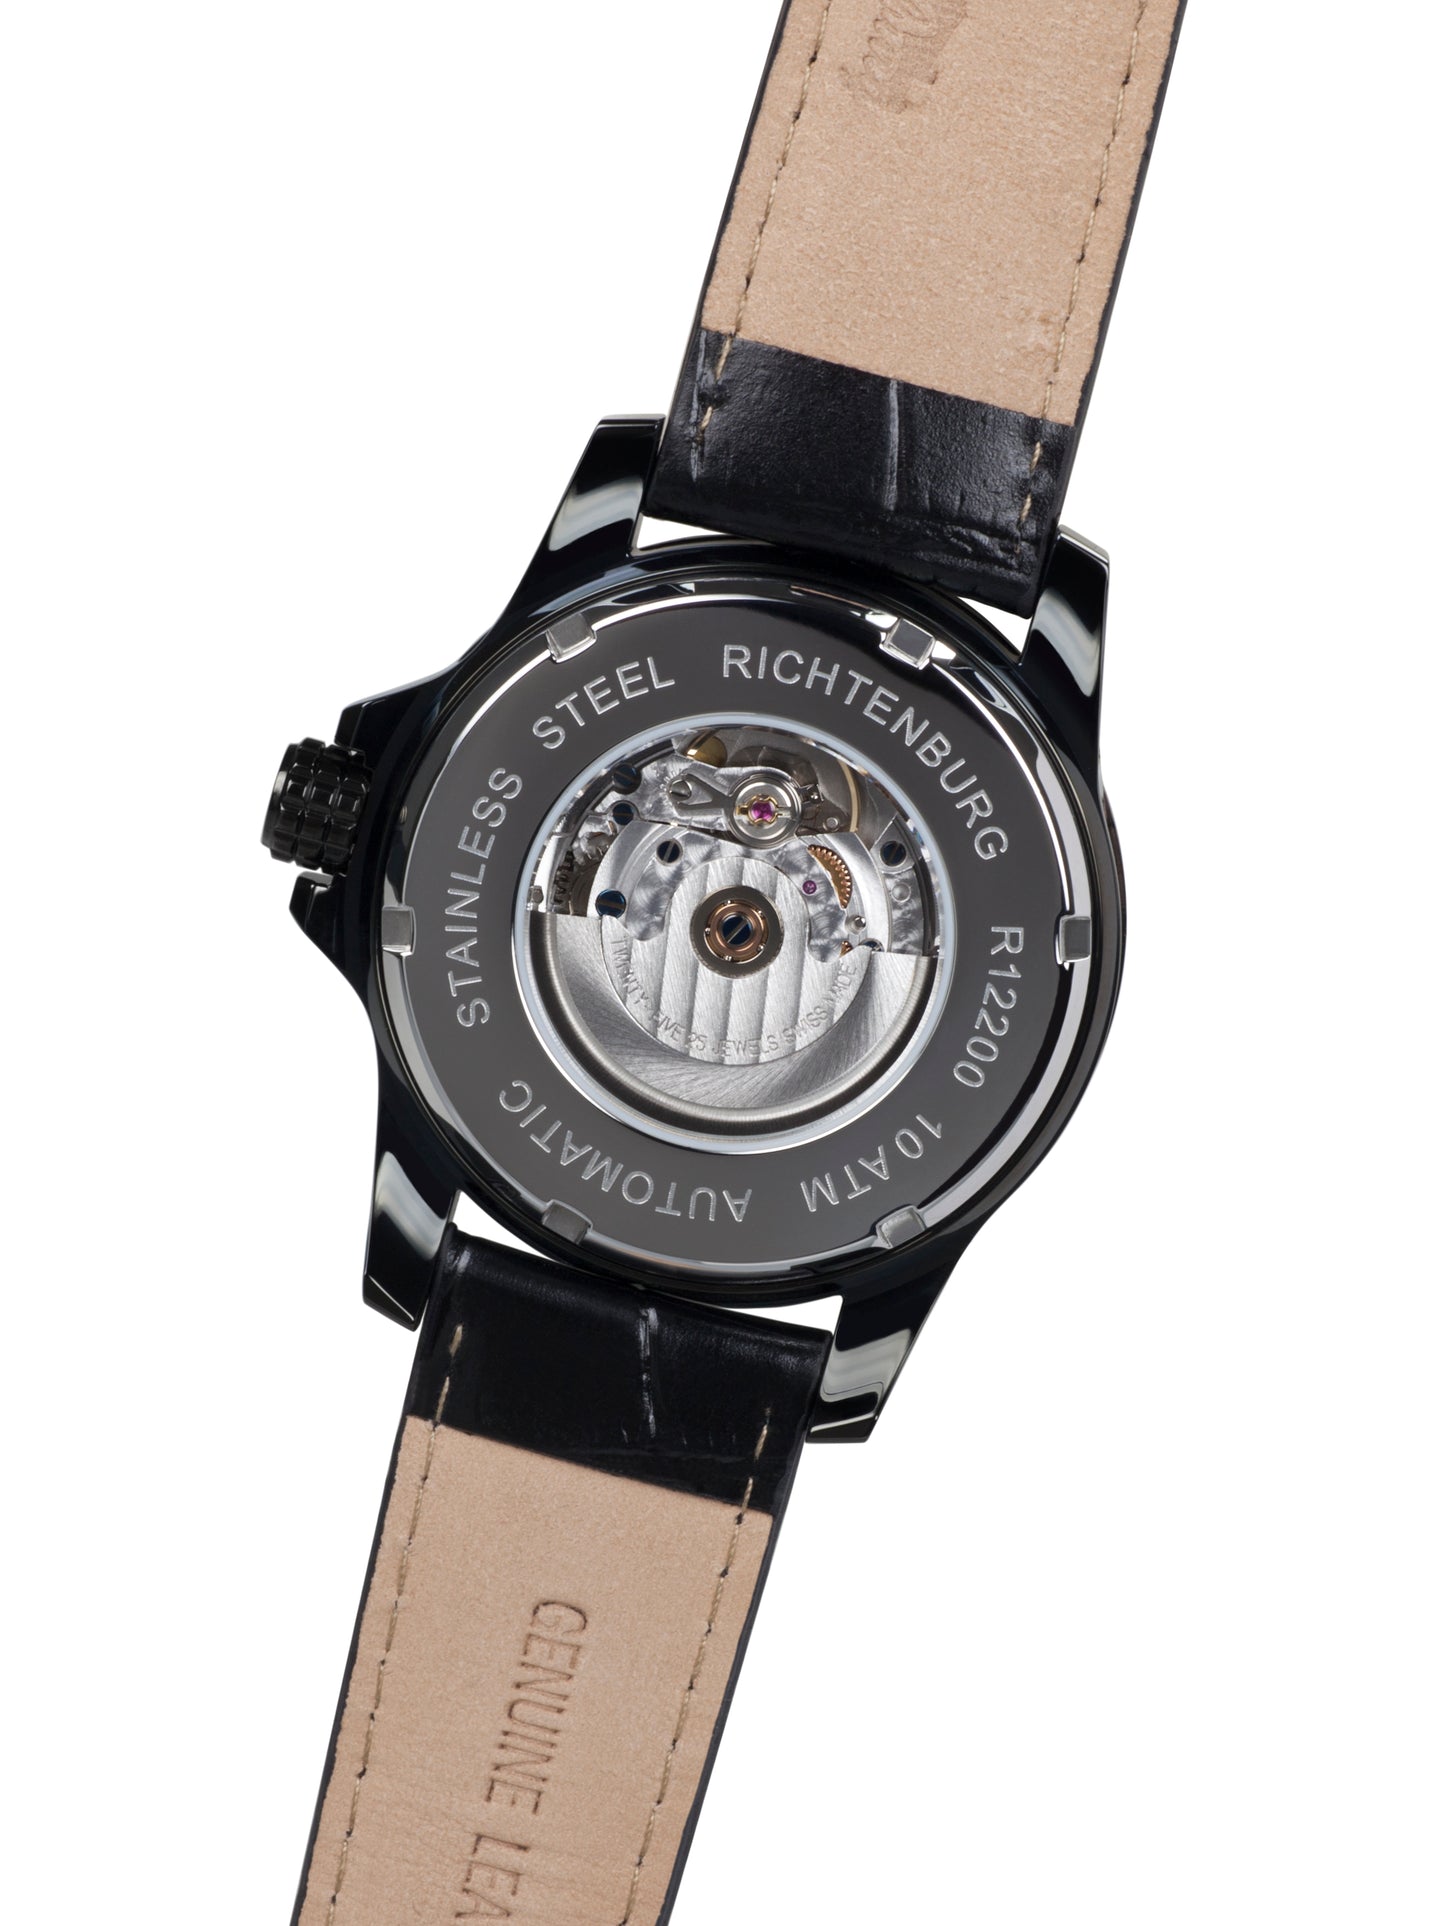 Automatic watches — Clasica — Richtenburg — white